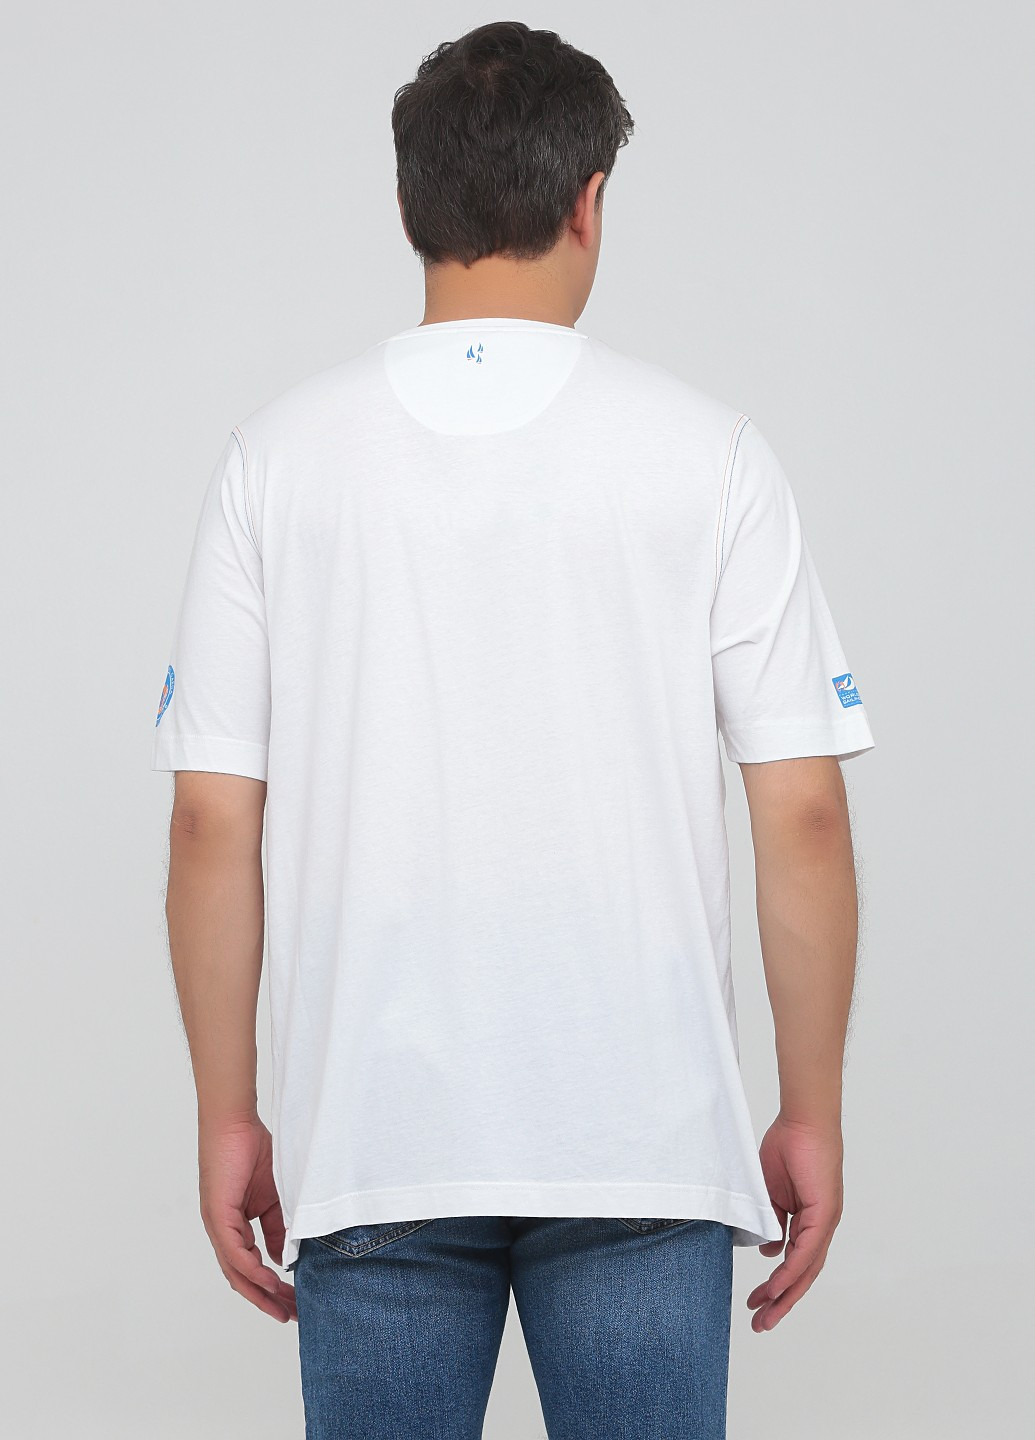 Белая футболка Campione del garda